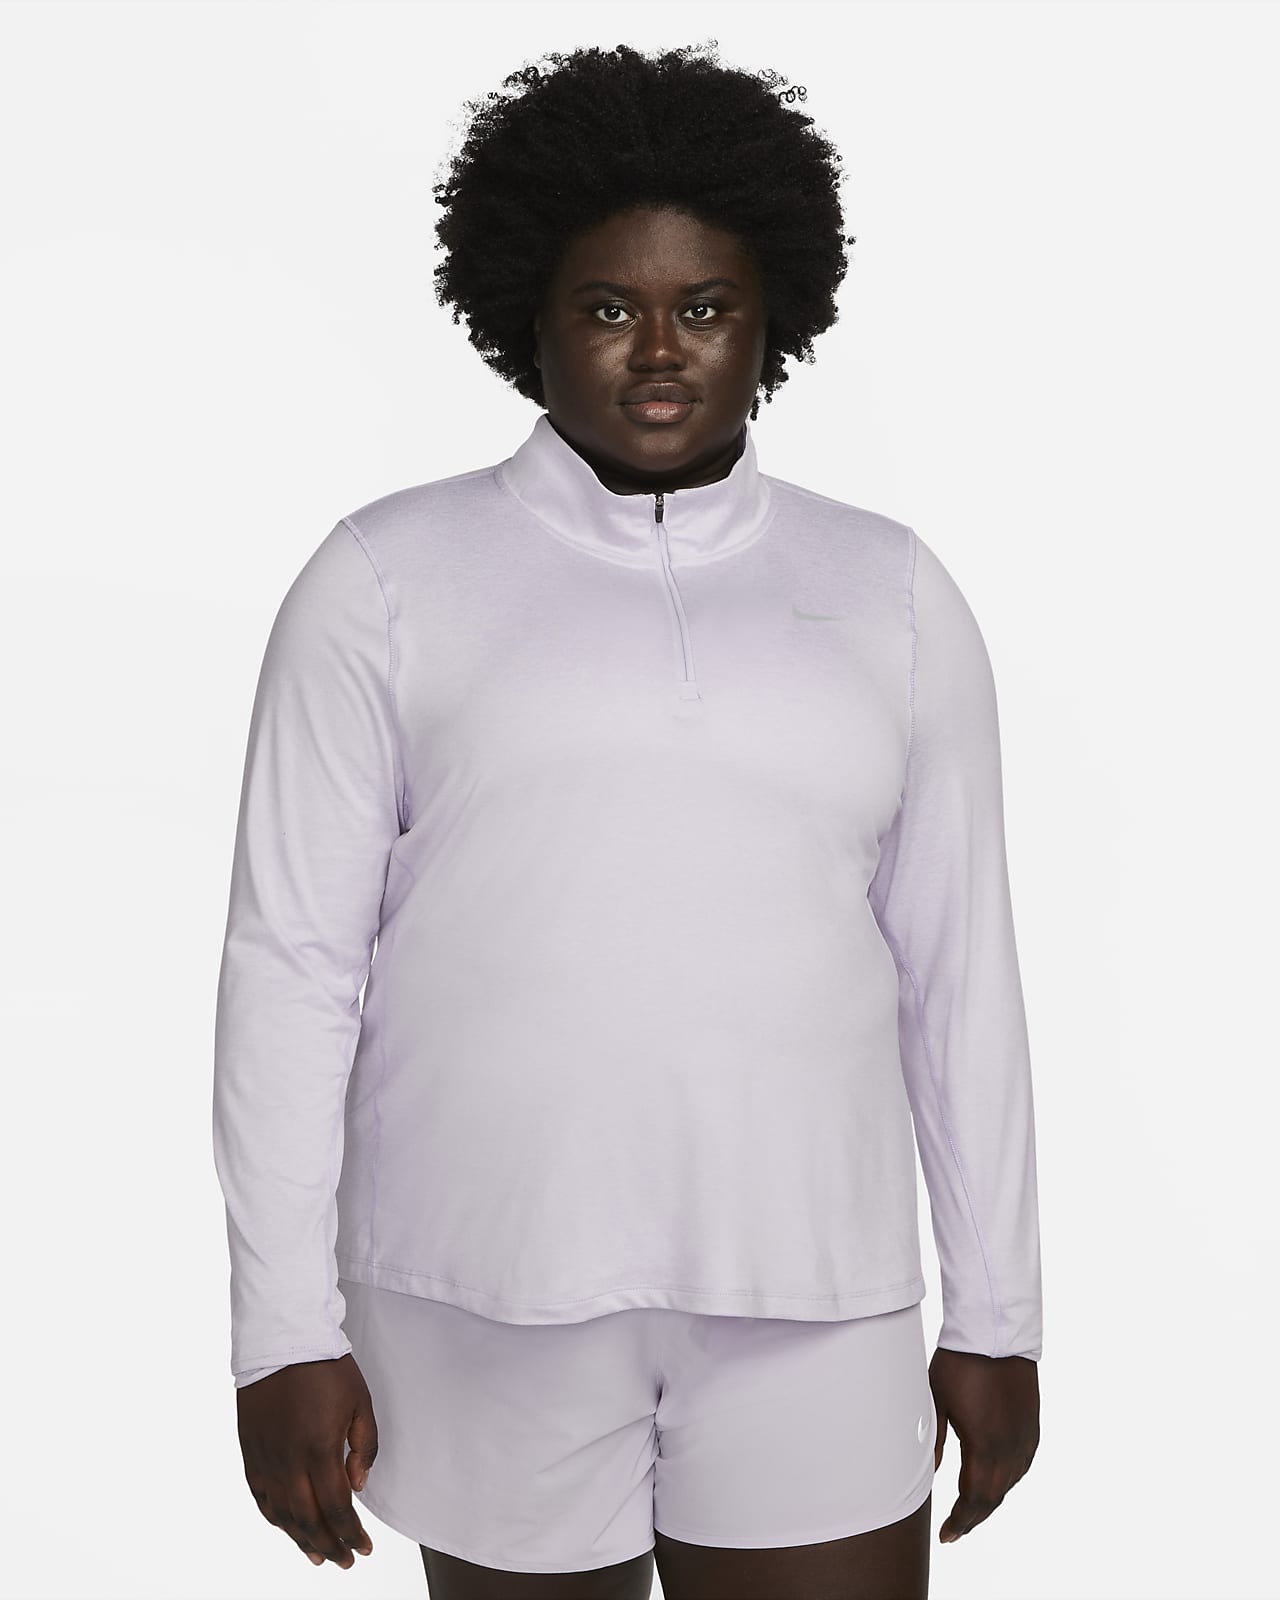 Nike Lauf-Oberteil mit Halbreißverschluss für Damen (große Größe)